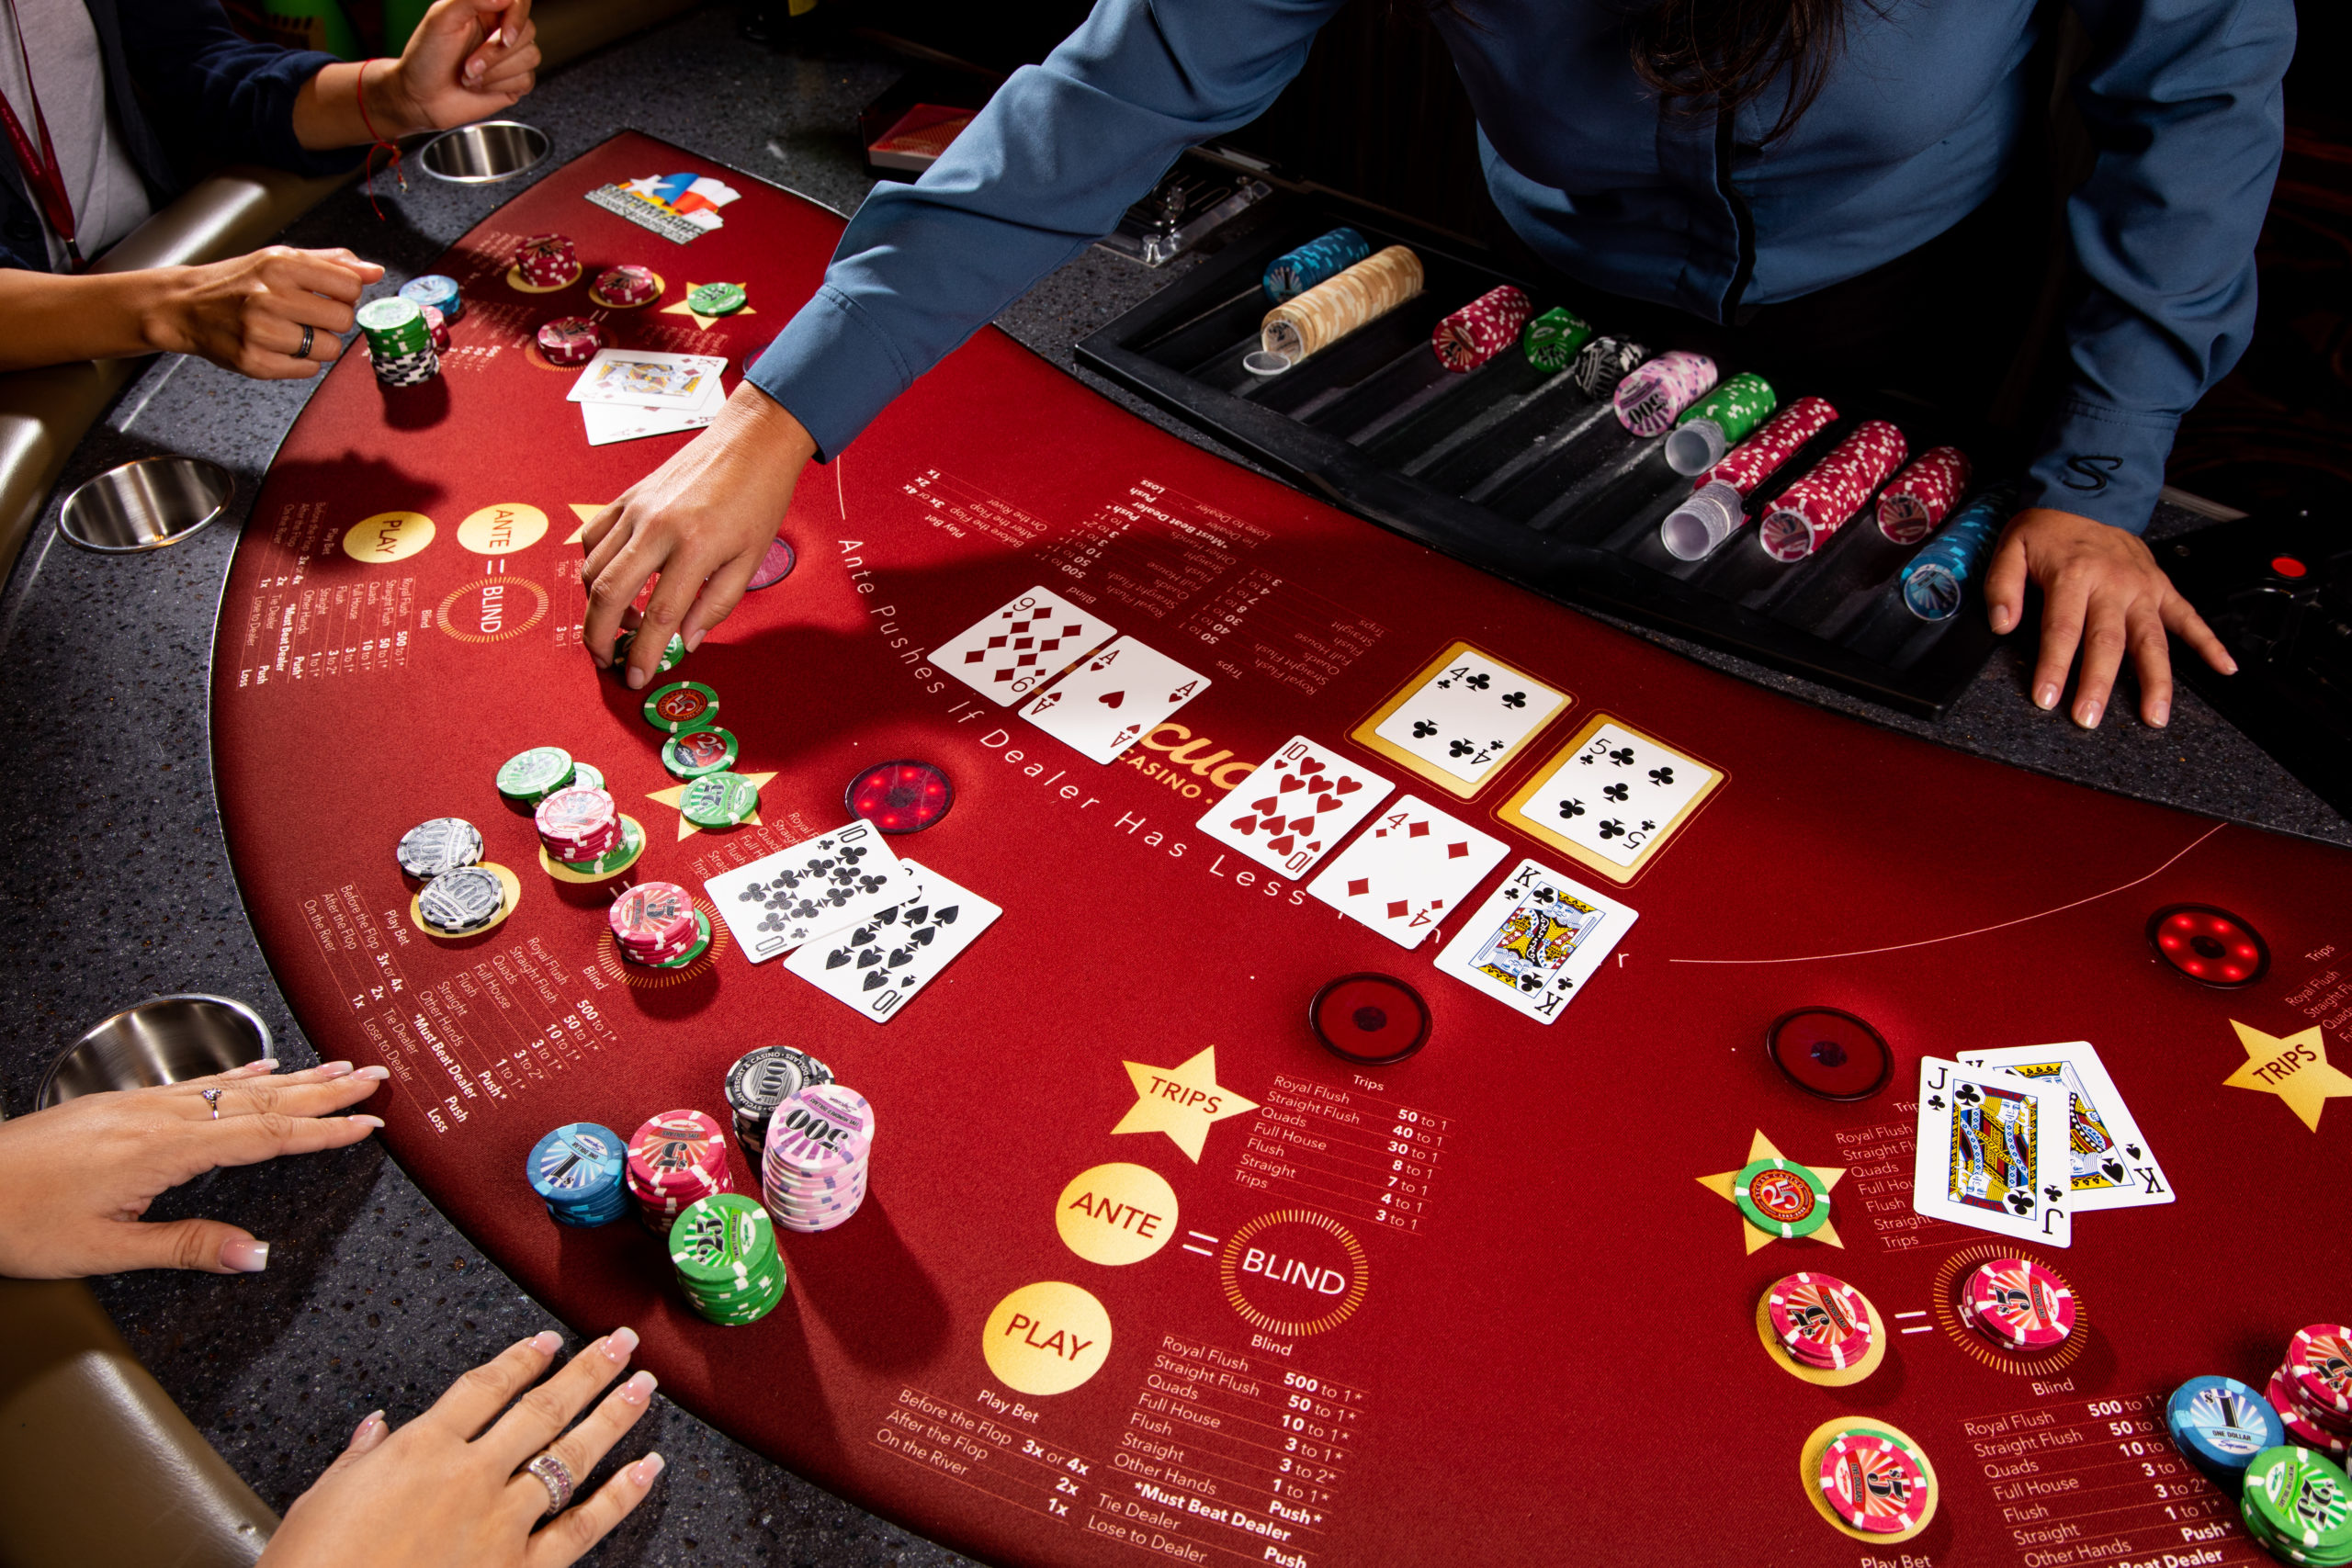 Покер texas holdem играть онлайн бесплатно пасьянс косынка играть бесплатно в онлайн бесплатно по 3 карты